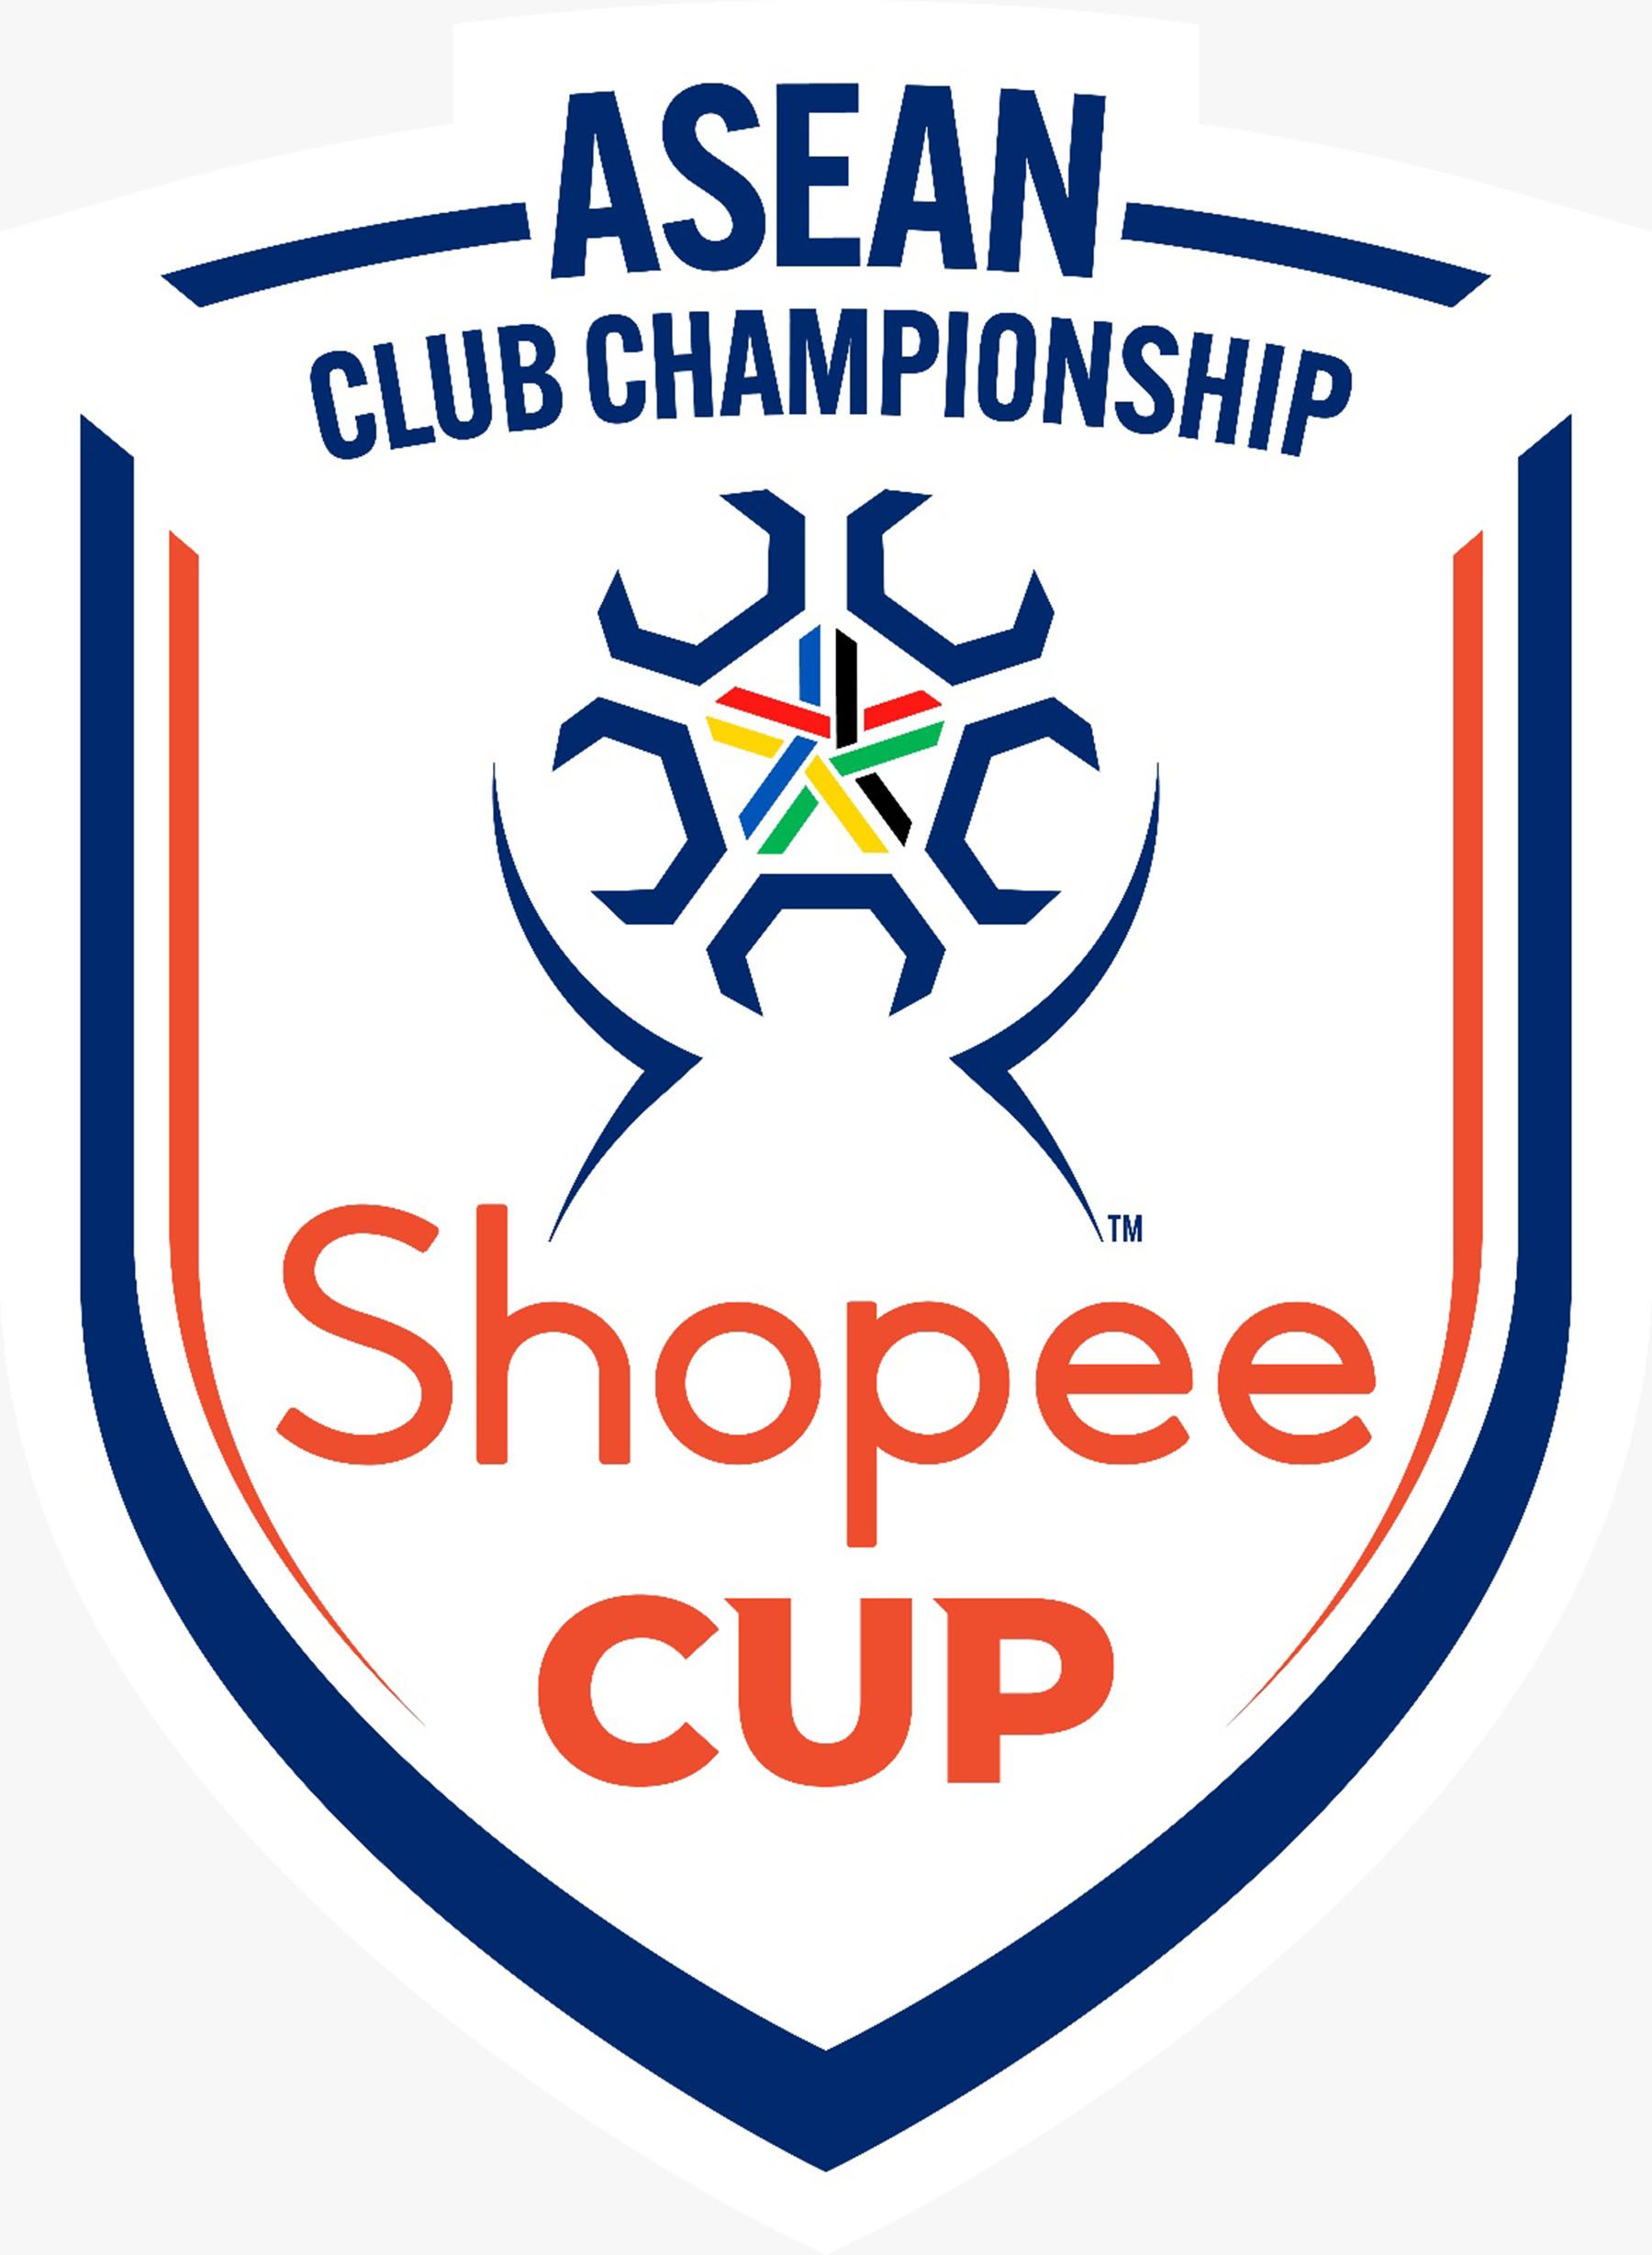 Shopee Cup ASEAN Club Championship Segera Digelar, Kompetisi Sepak Bola Antarklub Tertinggi di Asia Tenggara